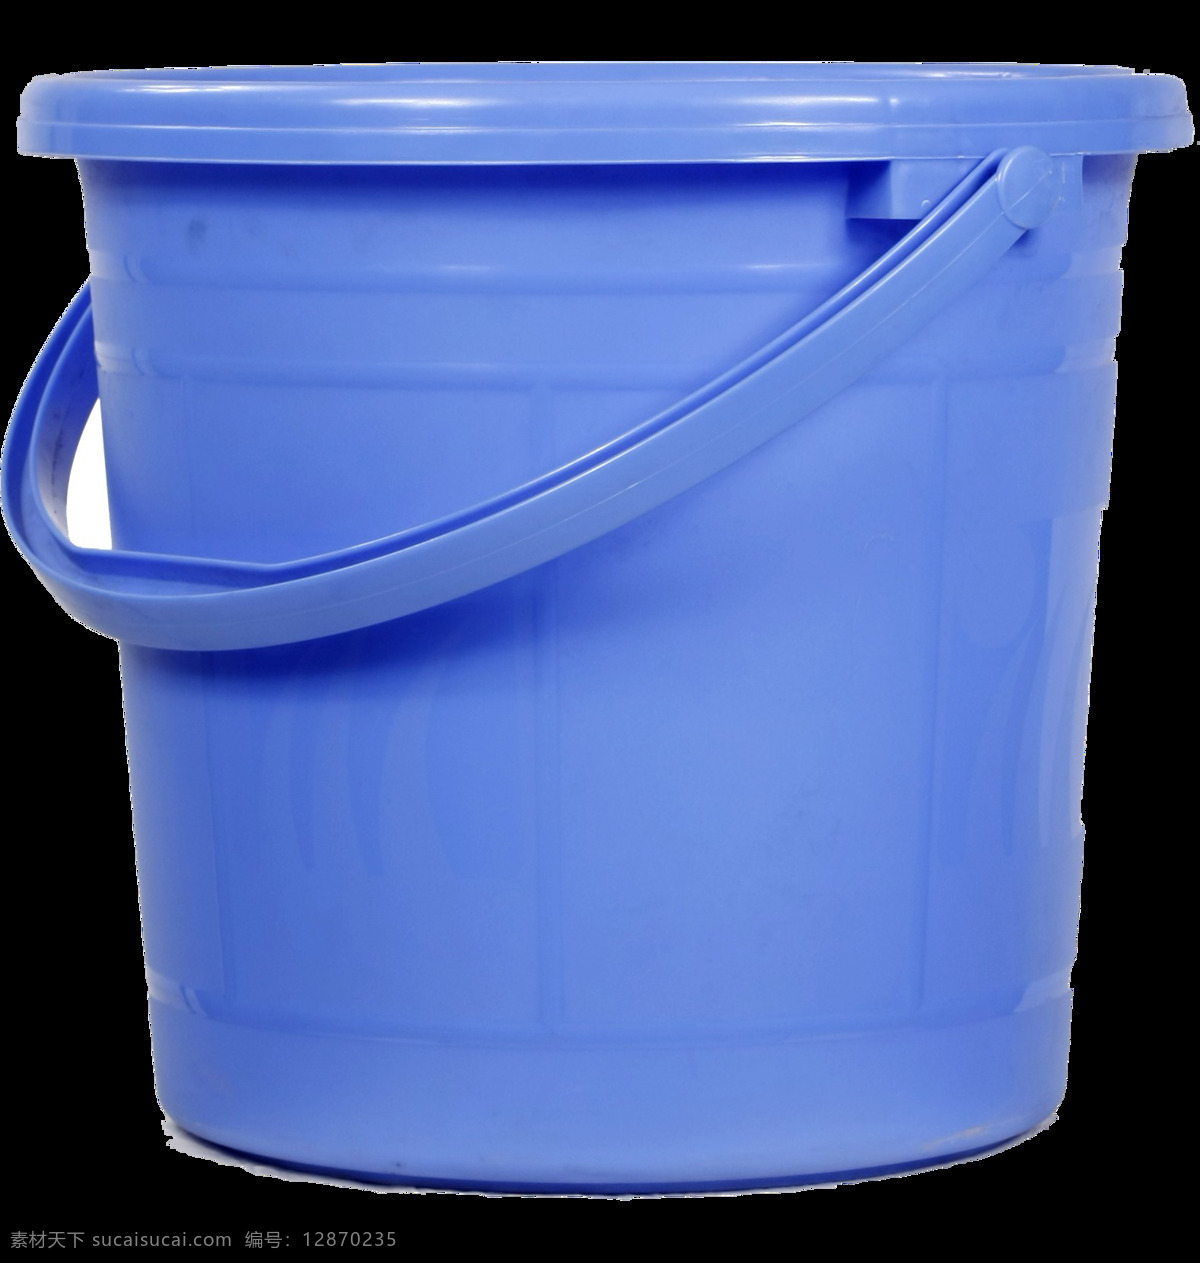 蓝色 漂亮 水桶 免 抠 透明 蓝色漂亮水桶 塑料桶 塑料桶素材 不锈钢桶图片 铁桶 绿色塑料桶 蓝色塑料桶 红色塑料桶 黄色塑料桶 不锈钢水桶 水桶素材 水桶图片